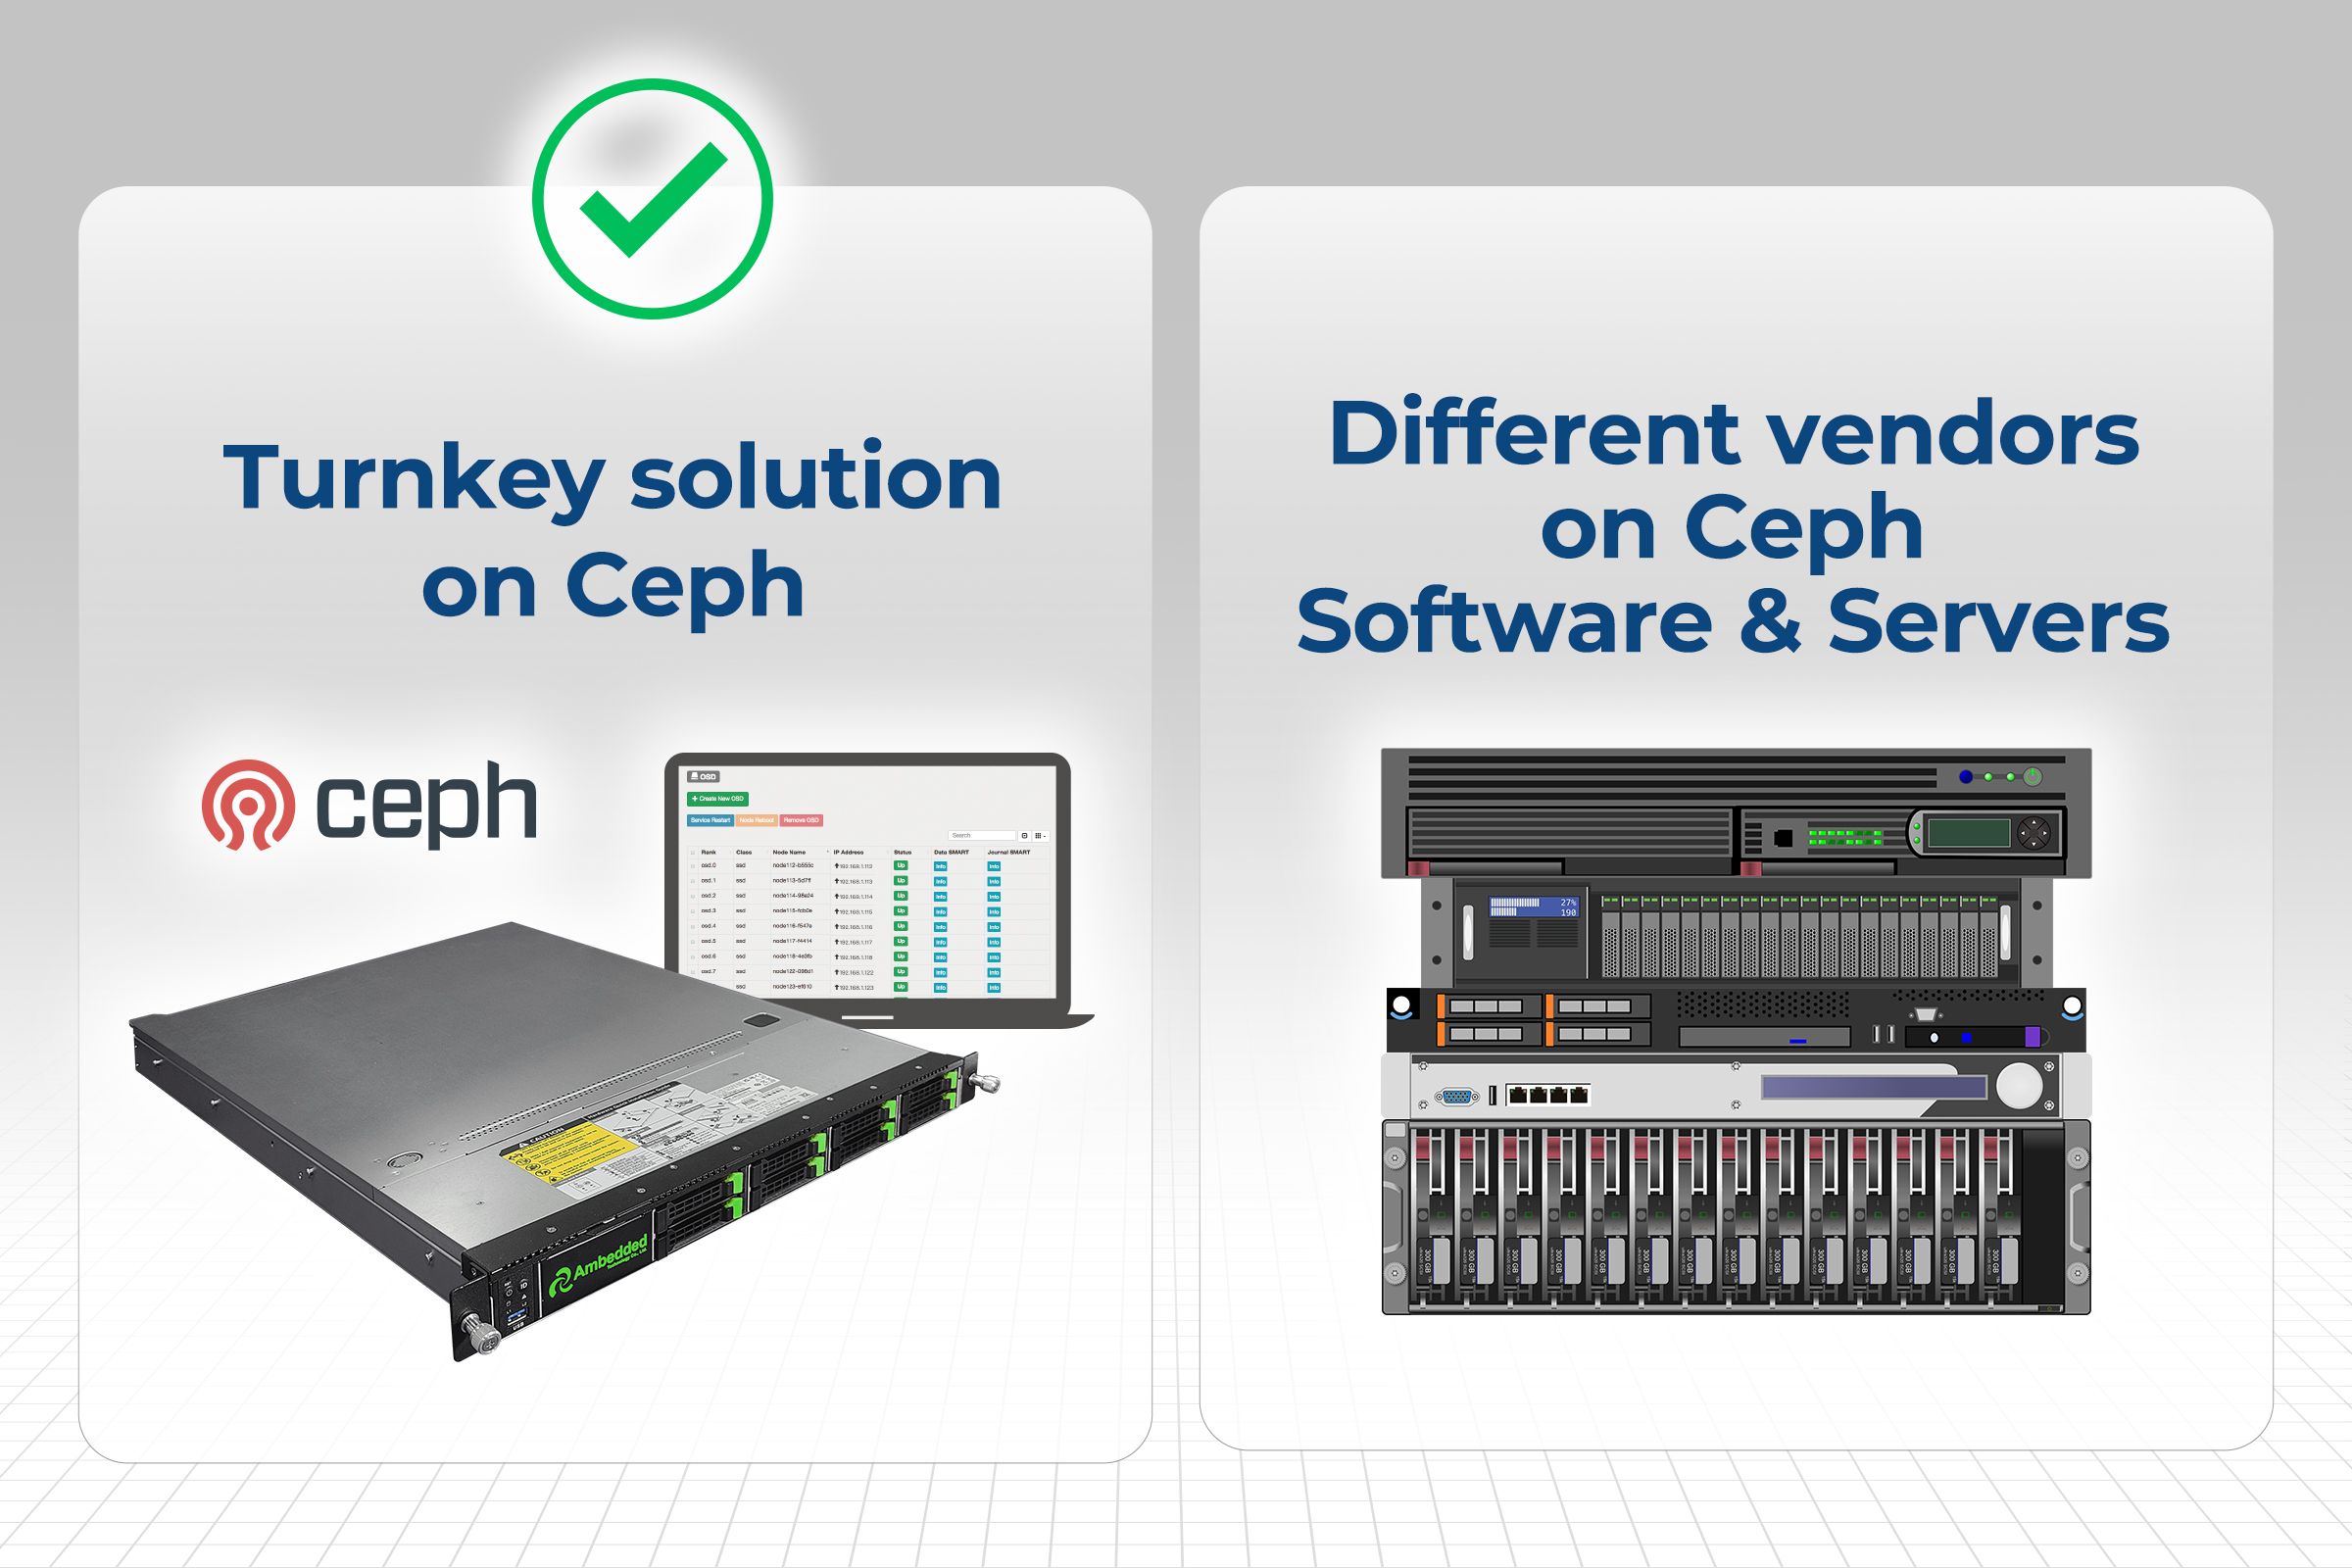 Ceph turnkey çözümünün (ceph cihazı) çeşitli sunucu platformlarında çalıştırmak için yazılım çözümünden daha iyi bir seçenek olduğu konusunda nedenler.